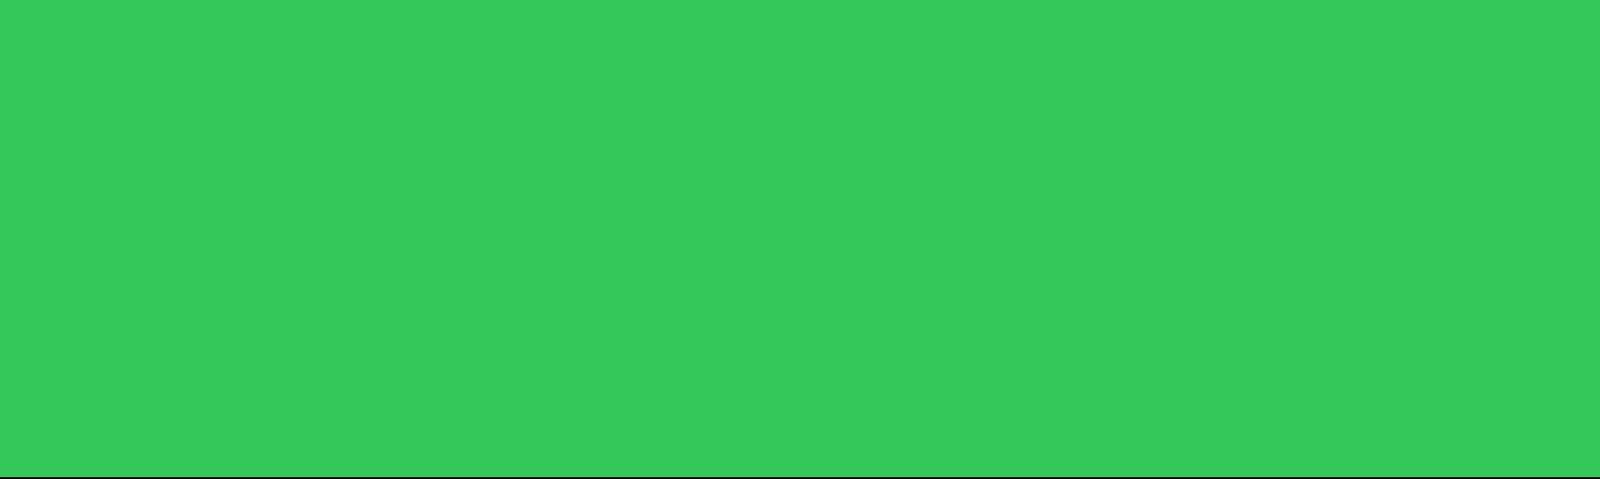 Zielonkawy (co to jest?) puzzle online